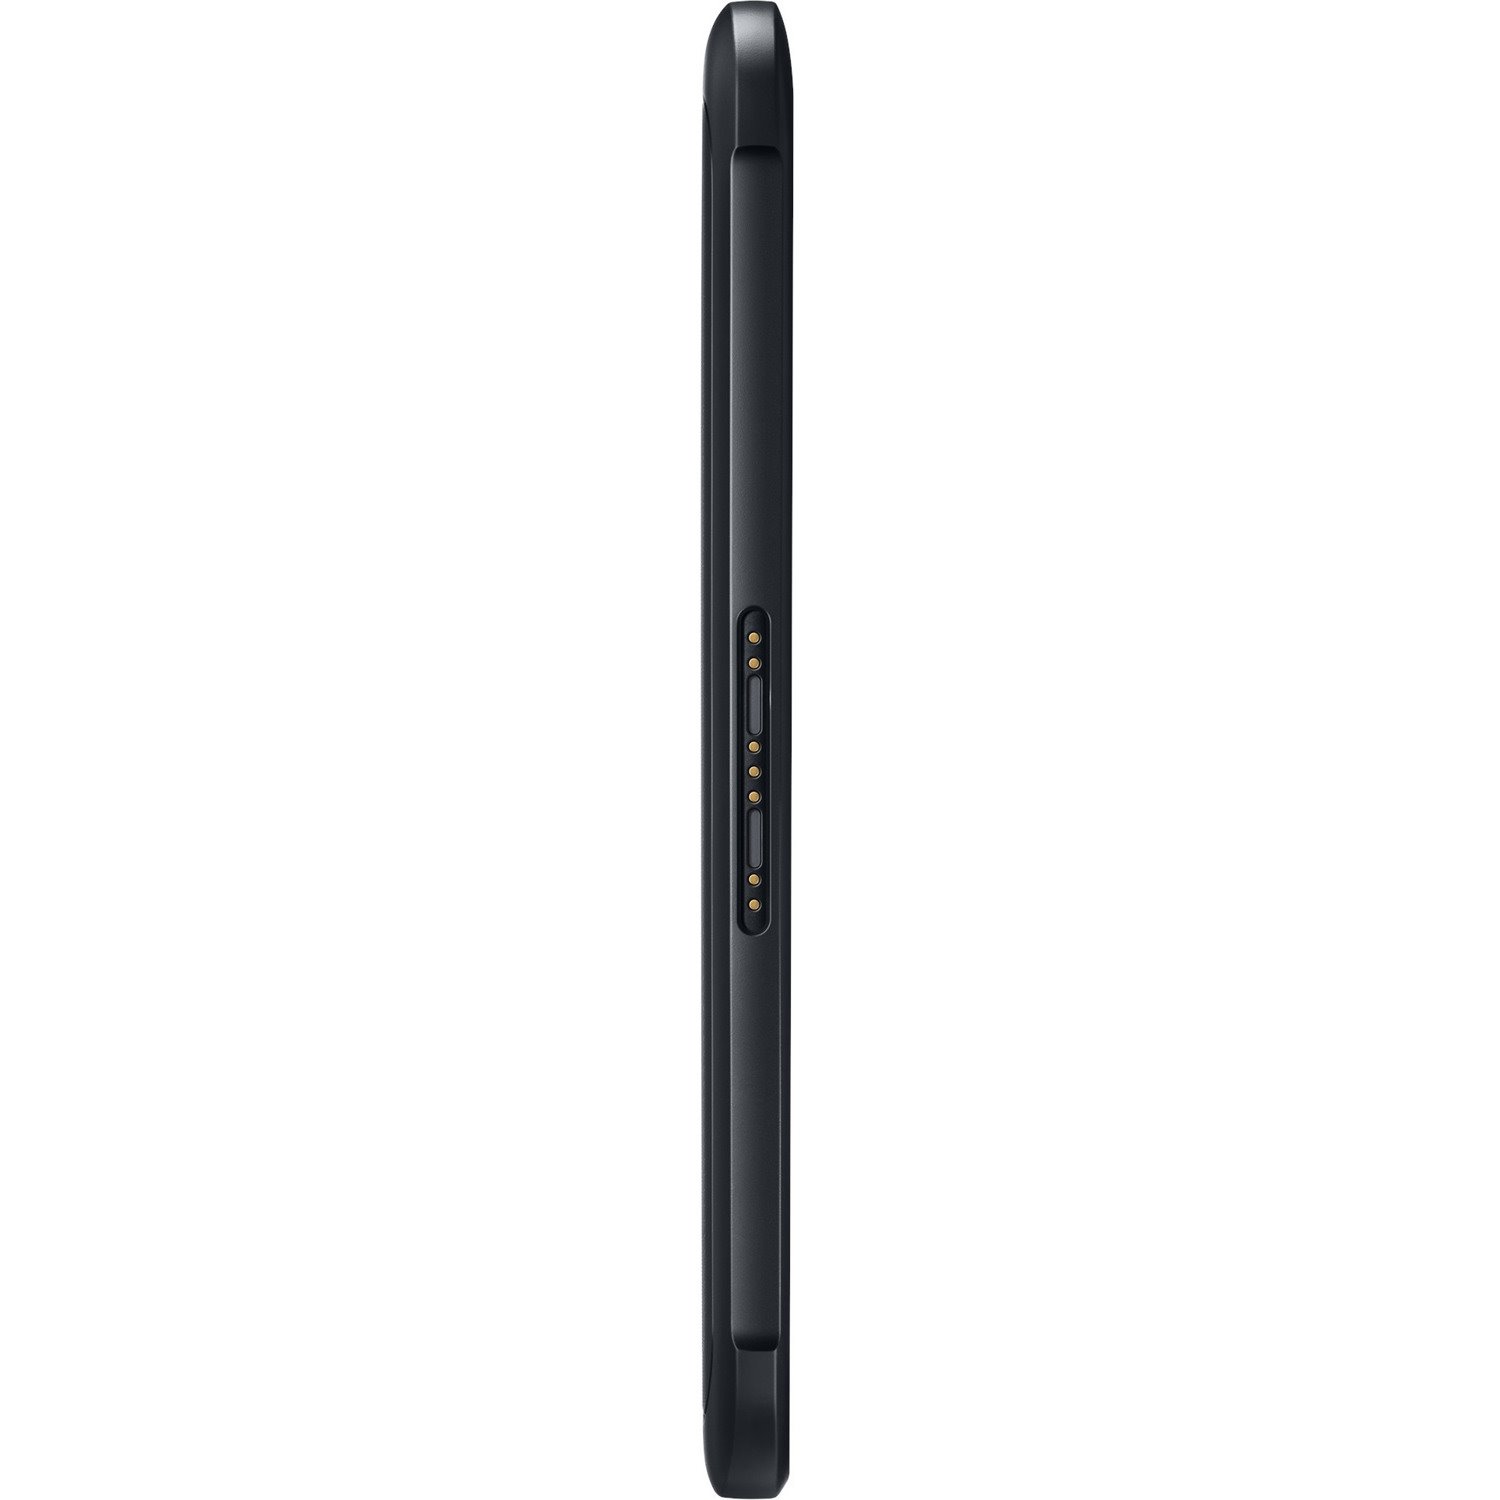 Samsung Galaxy Tab Active3 SM-T570 Rugged Tablet - 8" WUXGA - Samsung Exynos 9810 - 4 GB - 128 GB Storage - Black